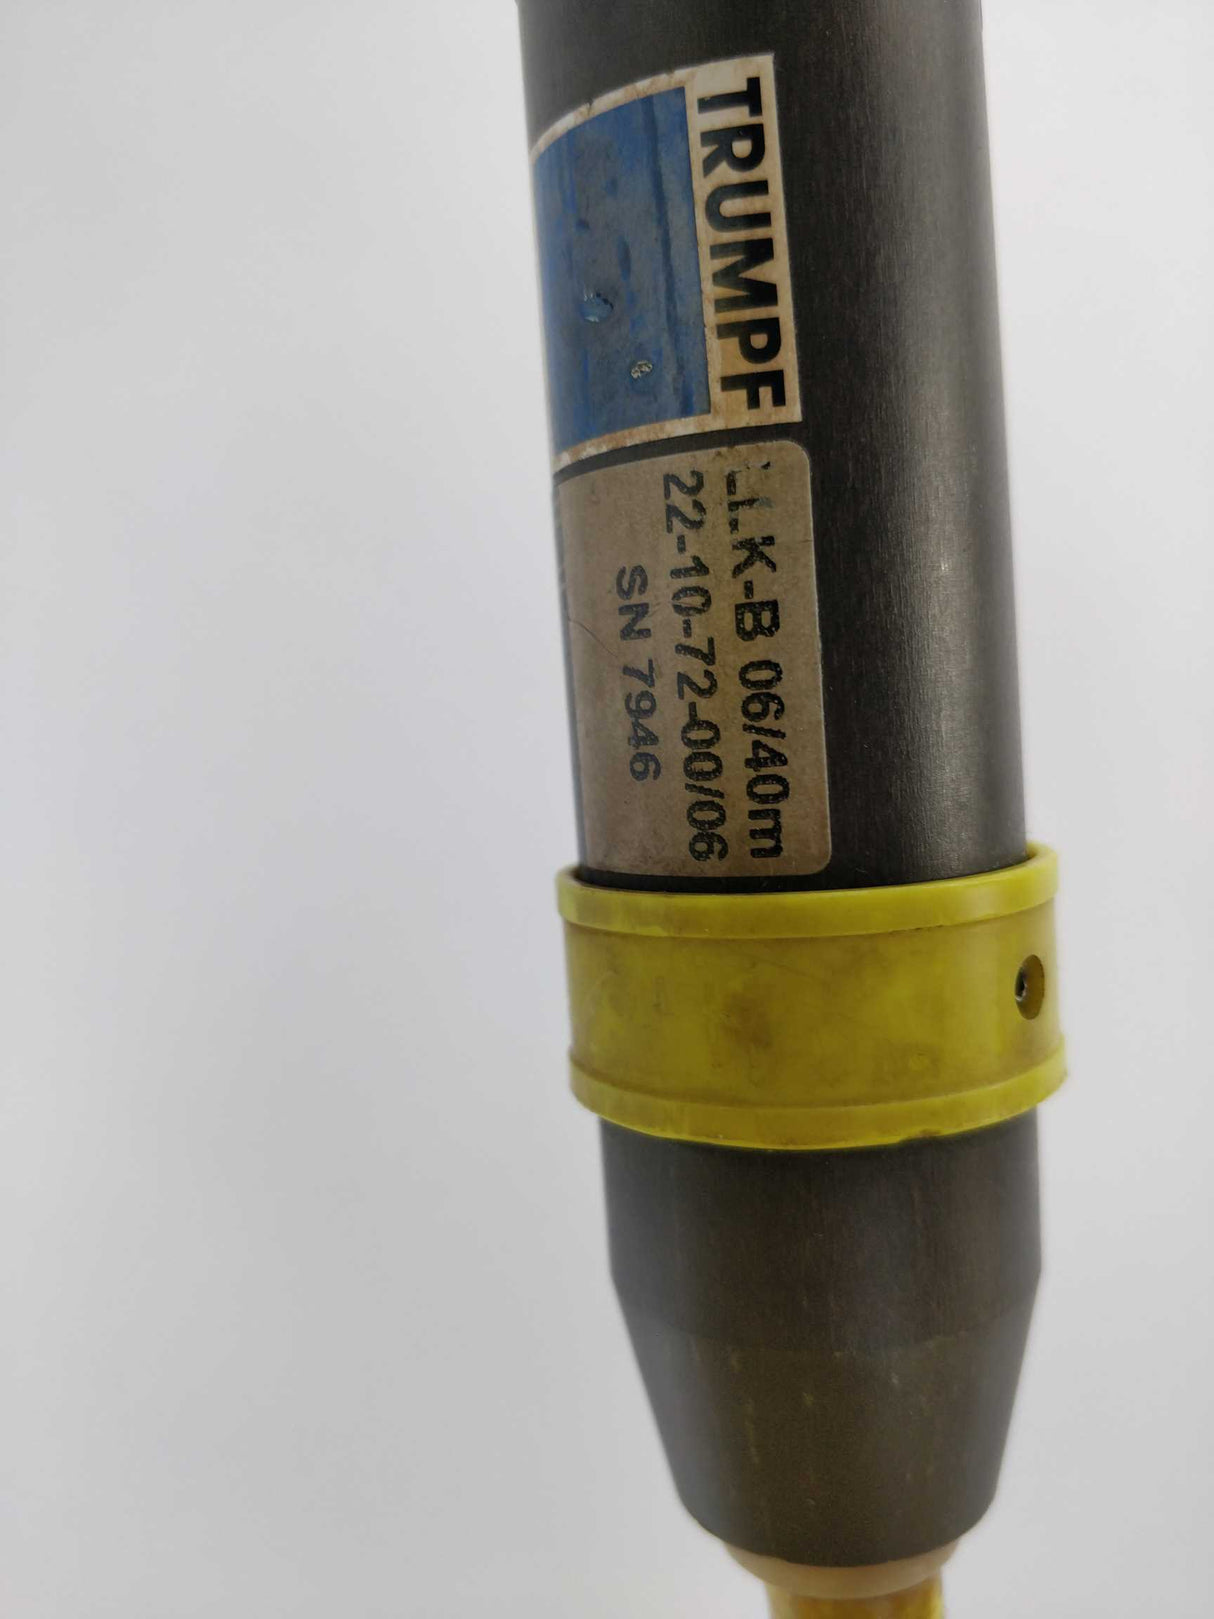 TRUMPF 22-10-72-00/06 LLK-B 06/40m Fiber Optic Laser Cable